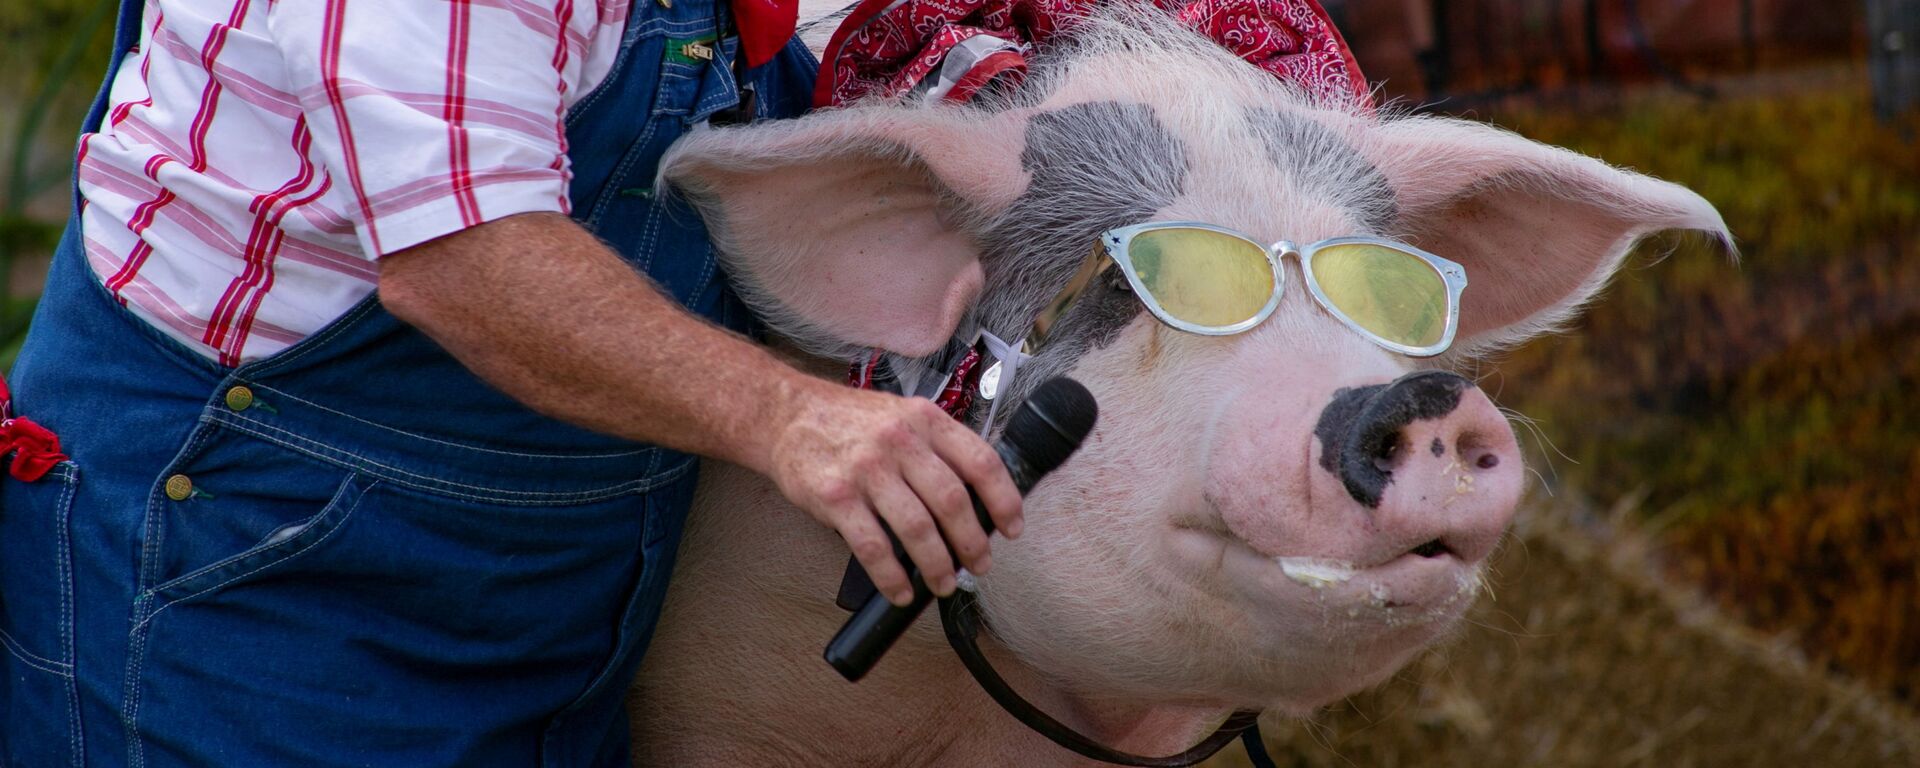 Фермер дает свинье микрофон для пения на сцене комедийного шоу The Pork Chop Revue на ярмарке штата Кентукки в Луисвилле, США - Sputnik Латвия, 1920, 01.10.2021